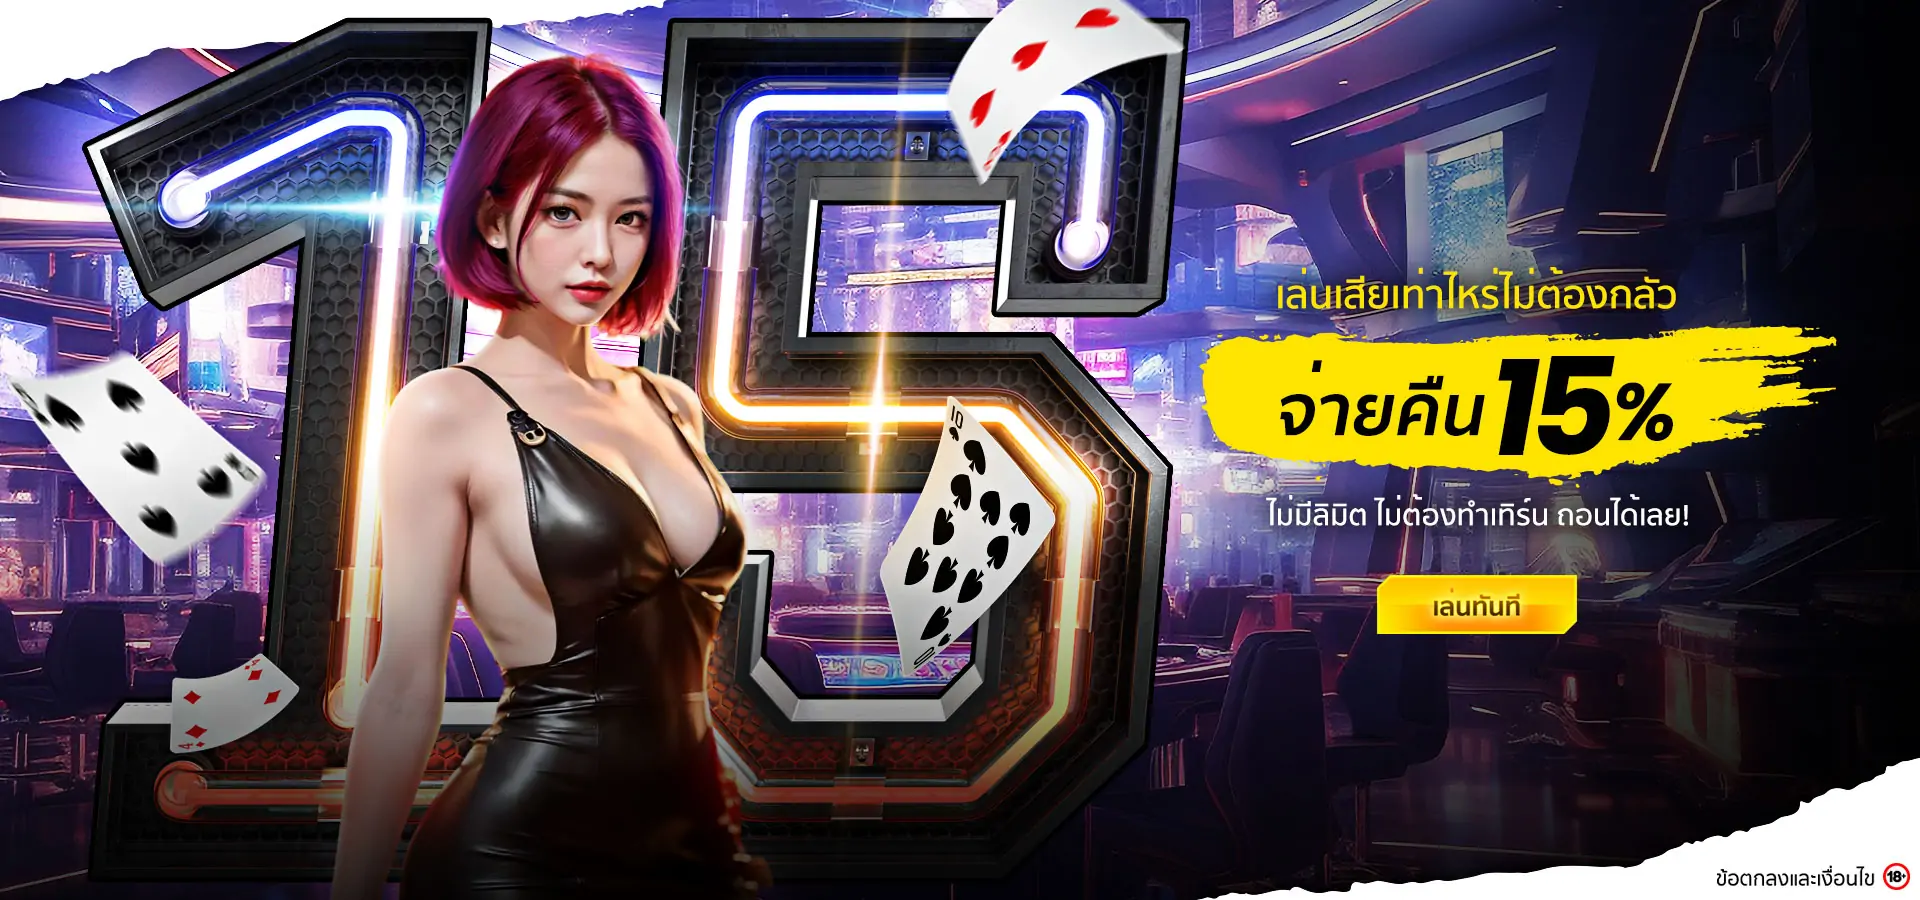 cash back 15% live casino banner desktop